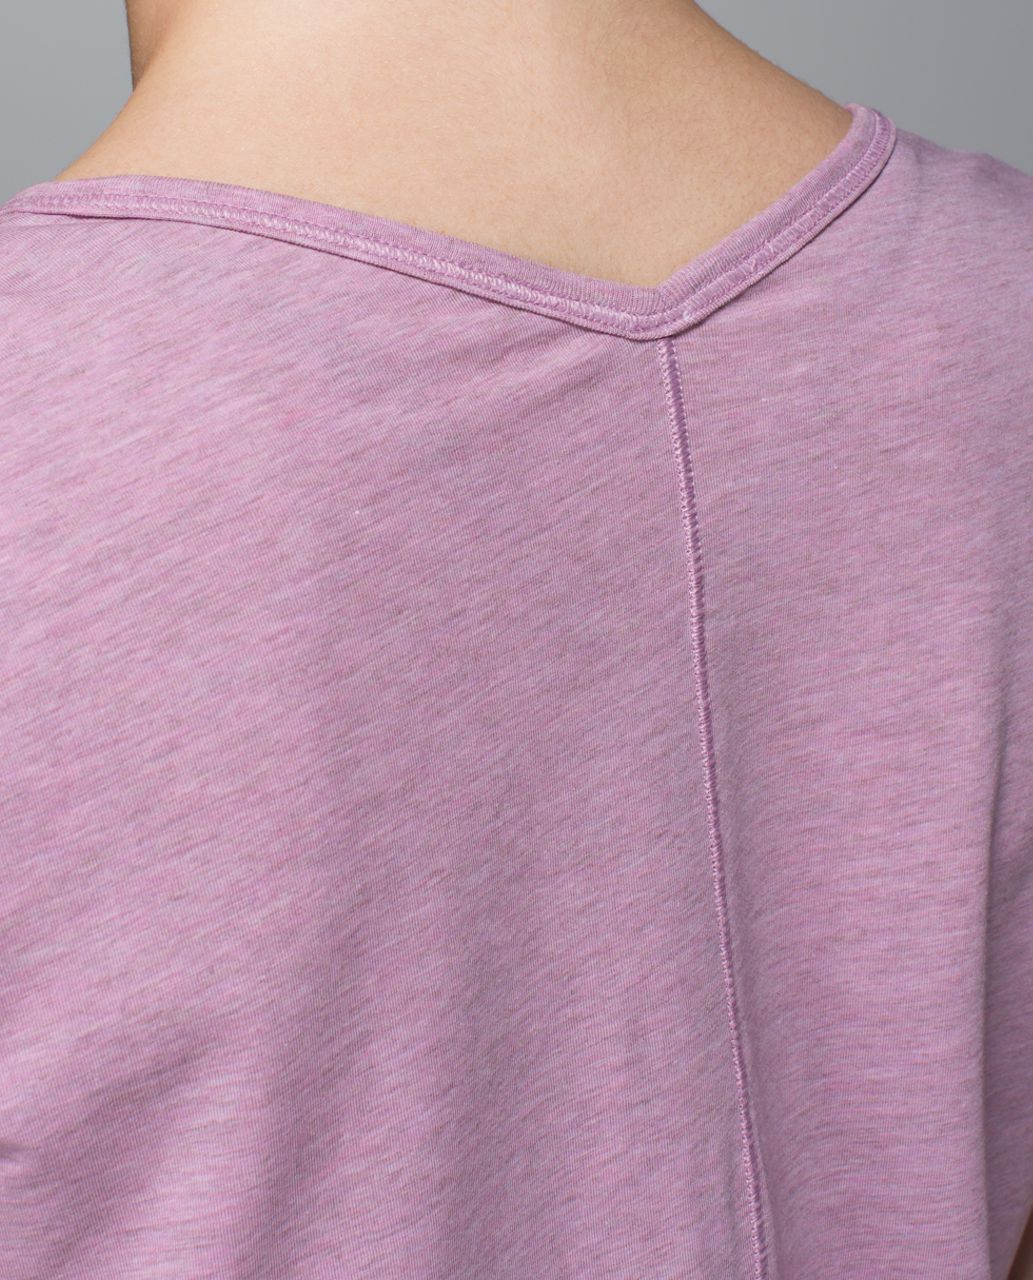 Lululemon Yogini 5 Year Short Sleeve Tee - Heathered Mauvelous / Purple Fog